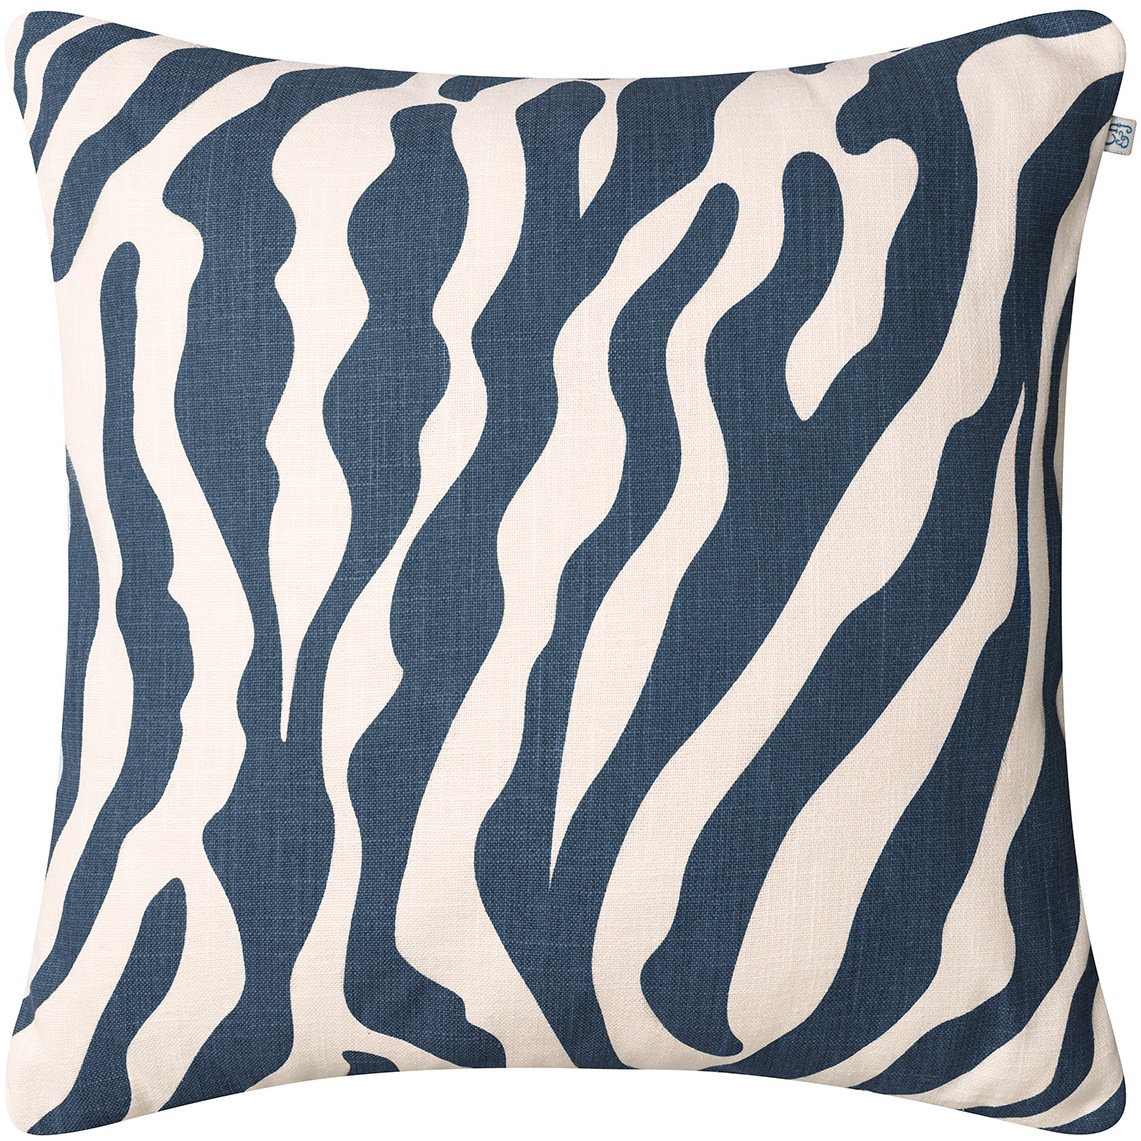 Zebra Tyyny 50x50 cm Ulkona Käytettävä, Sininen / Off-white